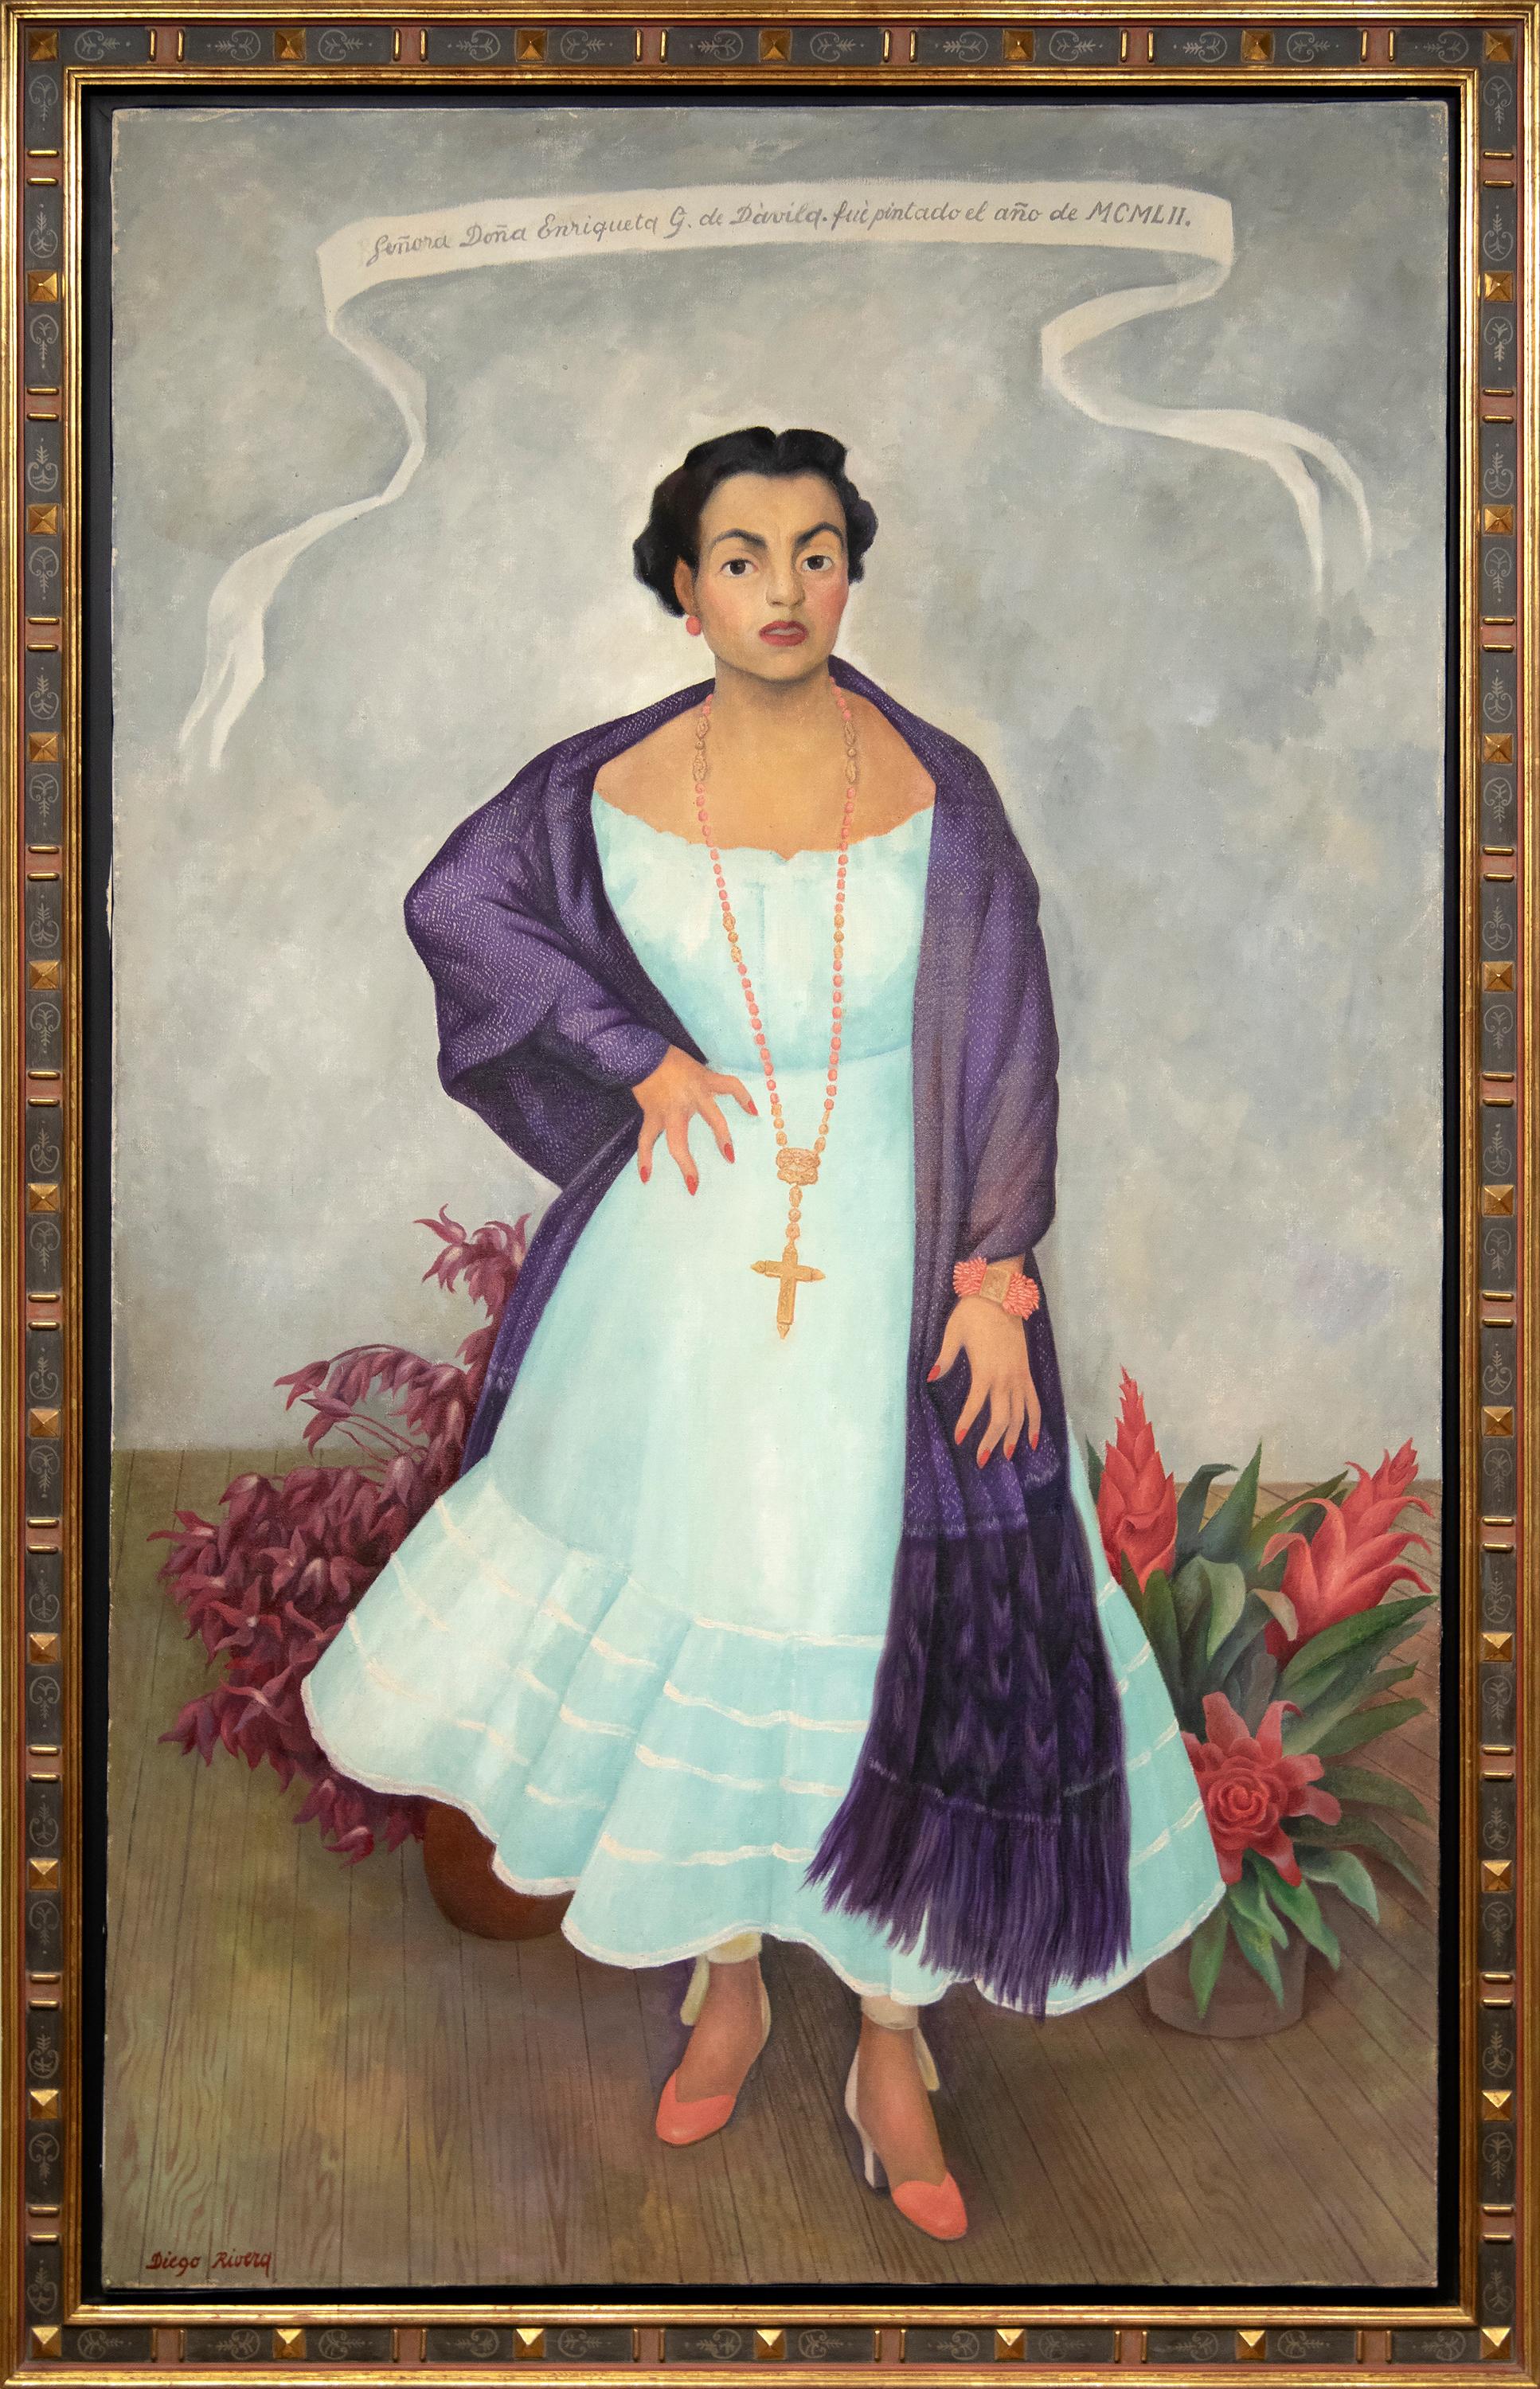 Porträt von Enriqueta G. Dávila – Painting von Diego Rivera